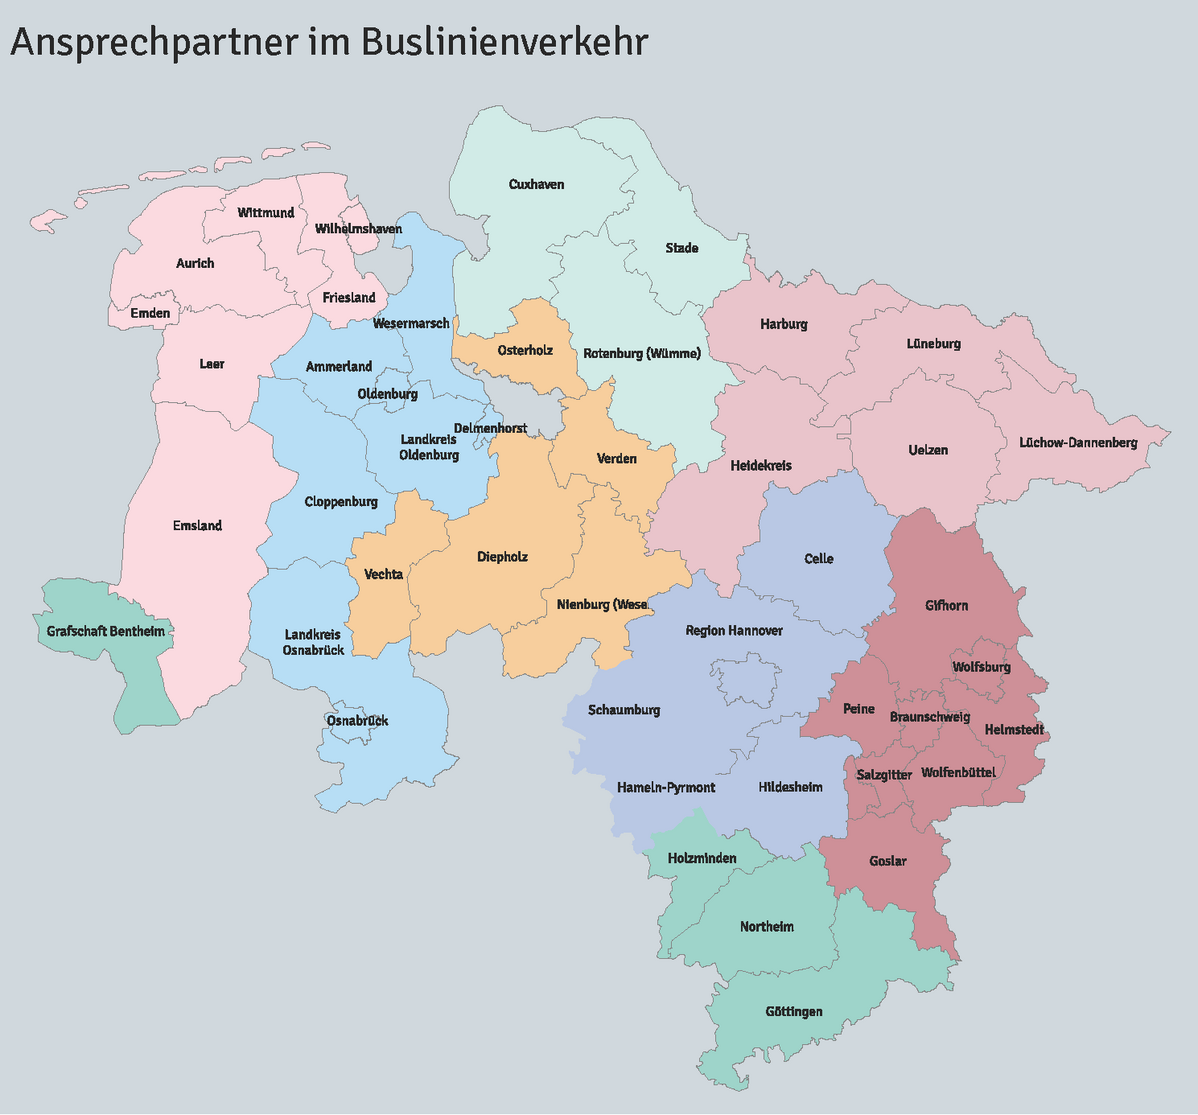 Niedersachsenkarte eingeteilt in Landkreise bzw. zuständige Aufgabenträger für den ÖPNV und die regionalen Zuständigkeiten bei der LNVG